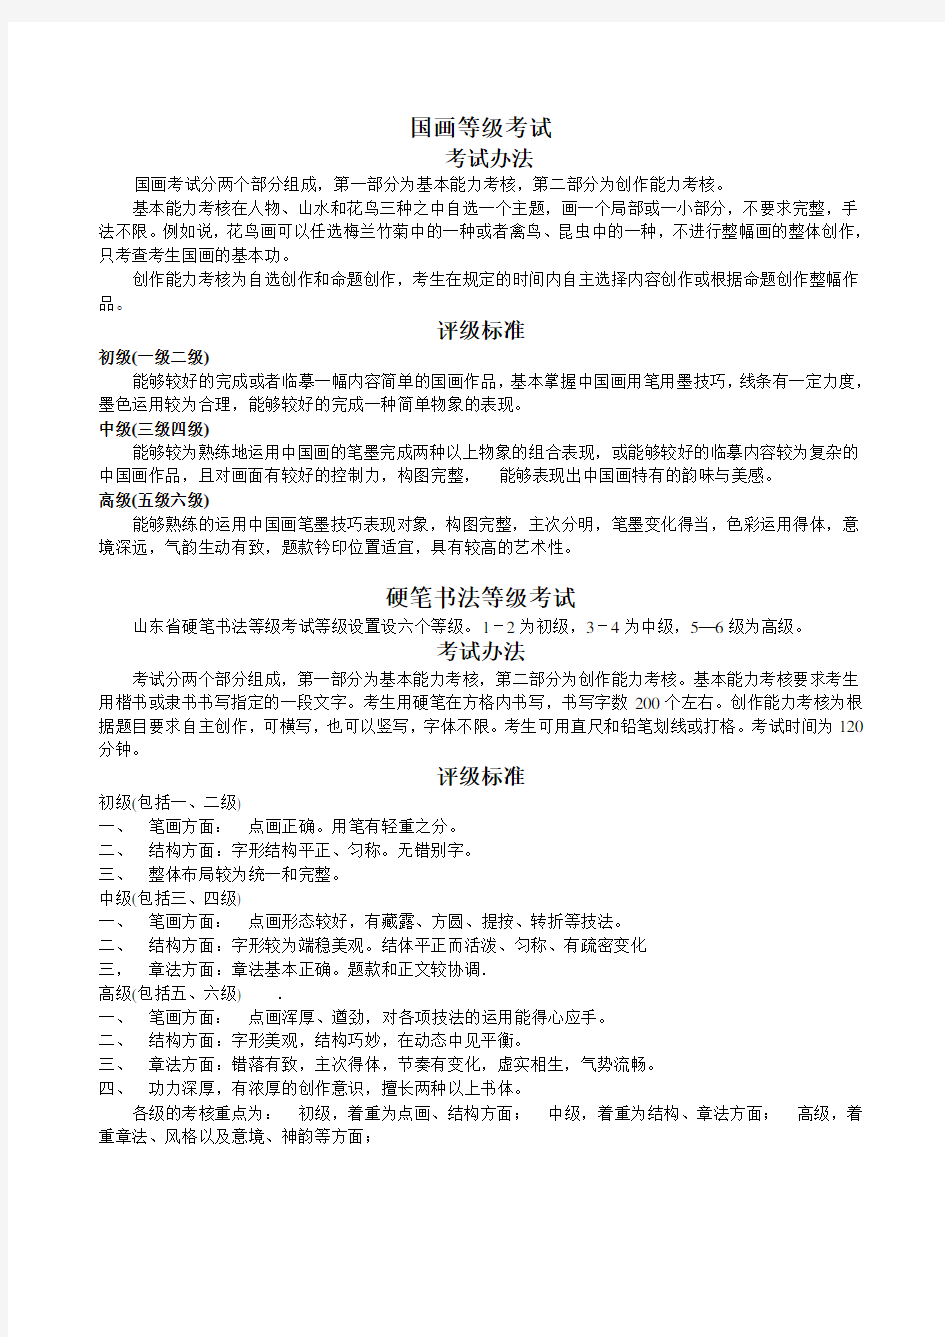 中国书画等级考试考试办法、评级标准及考试样题